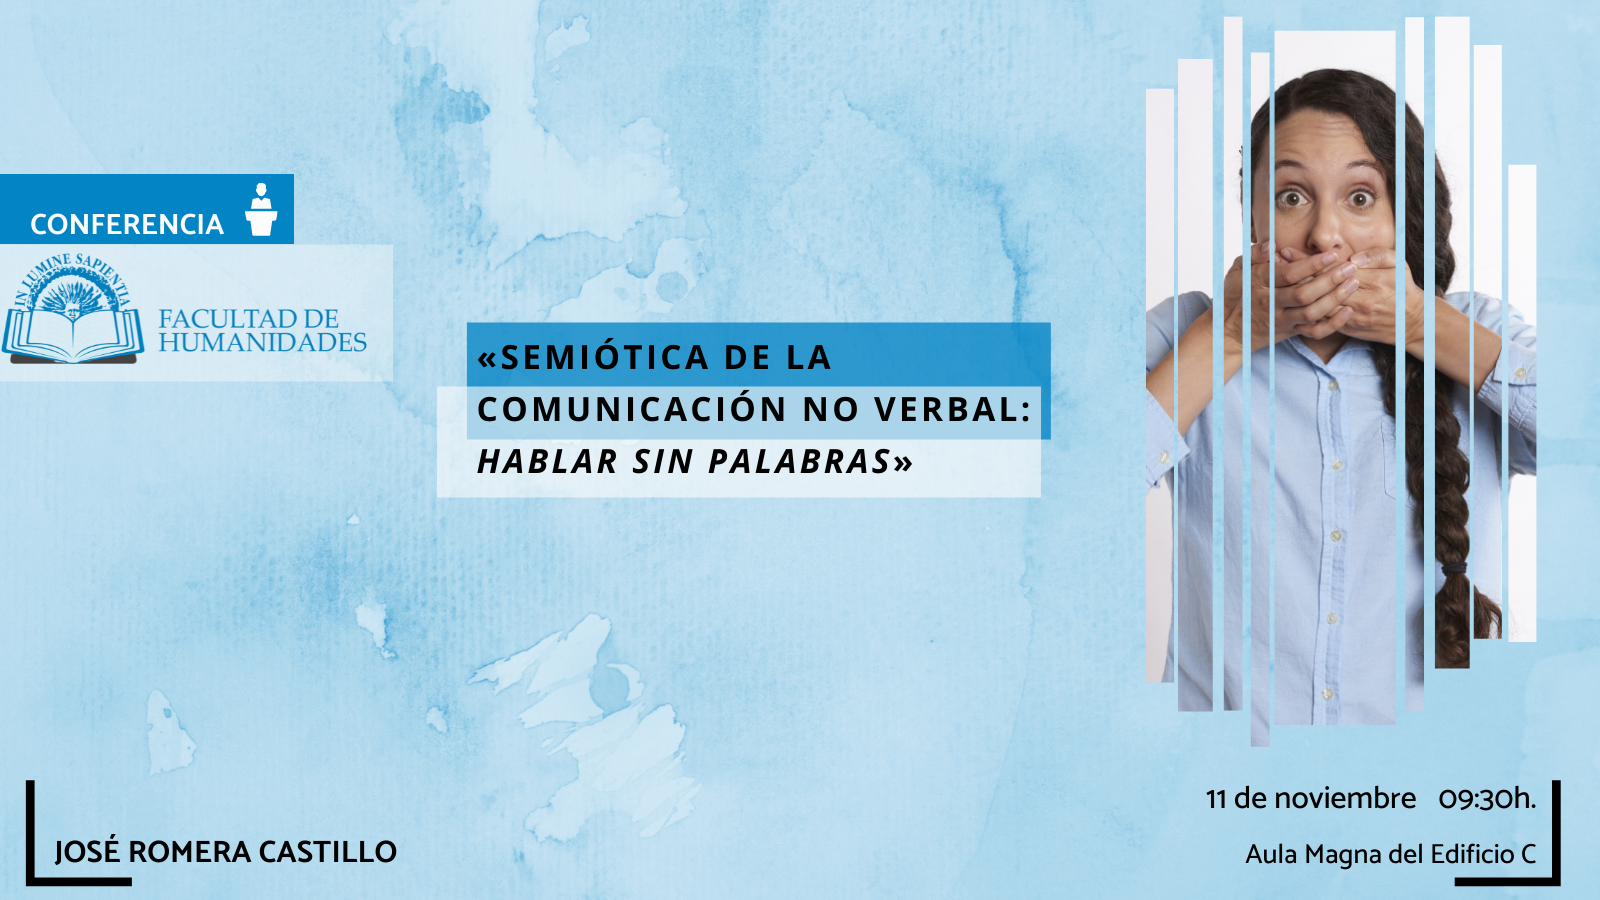 La Facultad de Humanidades y María Victoria Mateo García organizan la actividad titulada "SEMIÓTICA DE LA COMUNICACIÓN NO VERBAL: HABLAR SIN PALABRAS‘’.